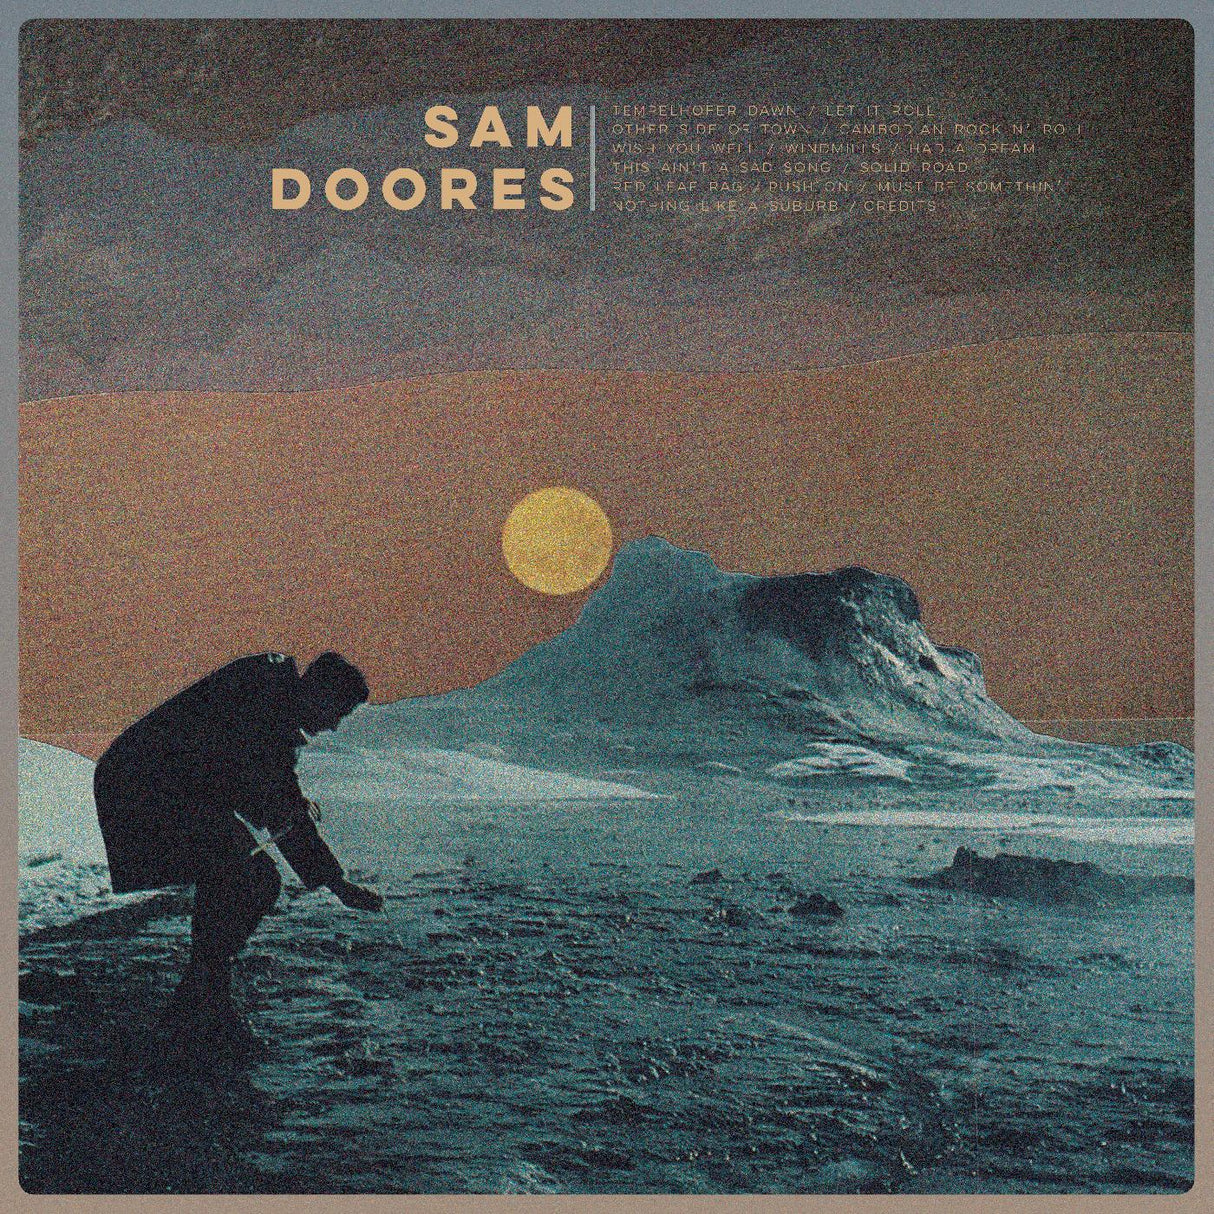 Sam Doores - Sam Doores [Vinyl]